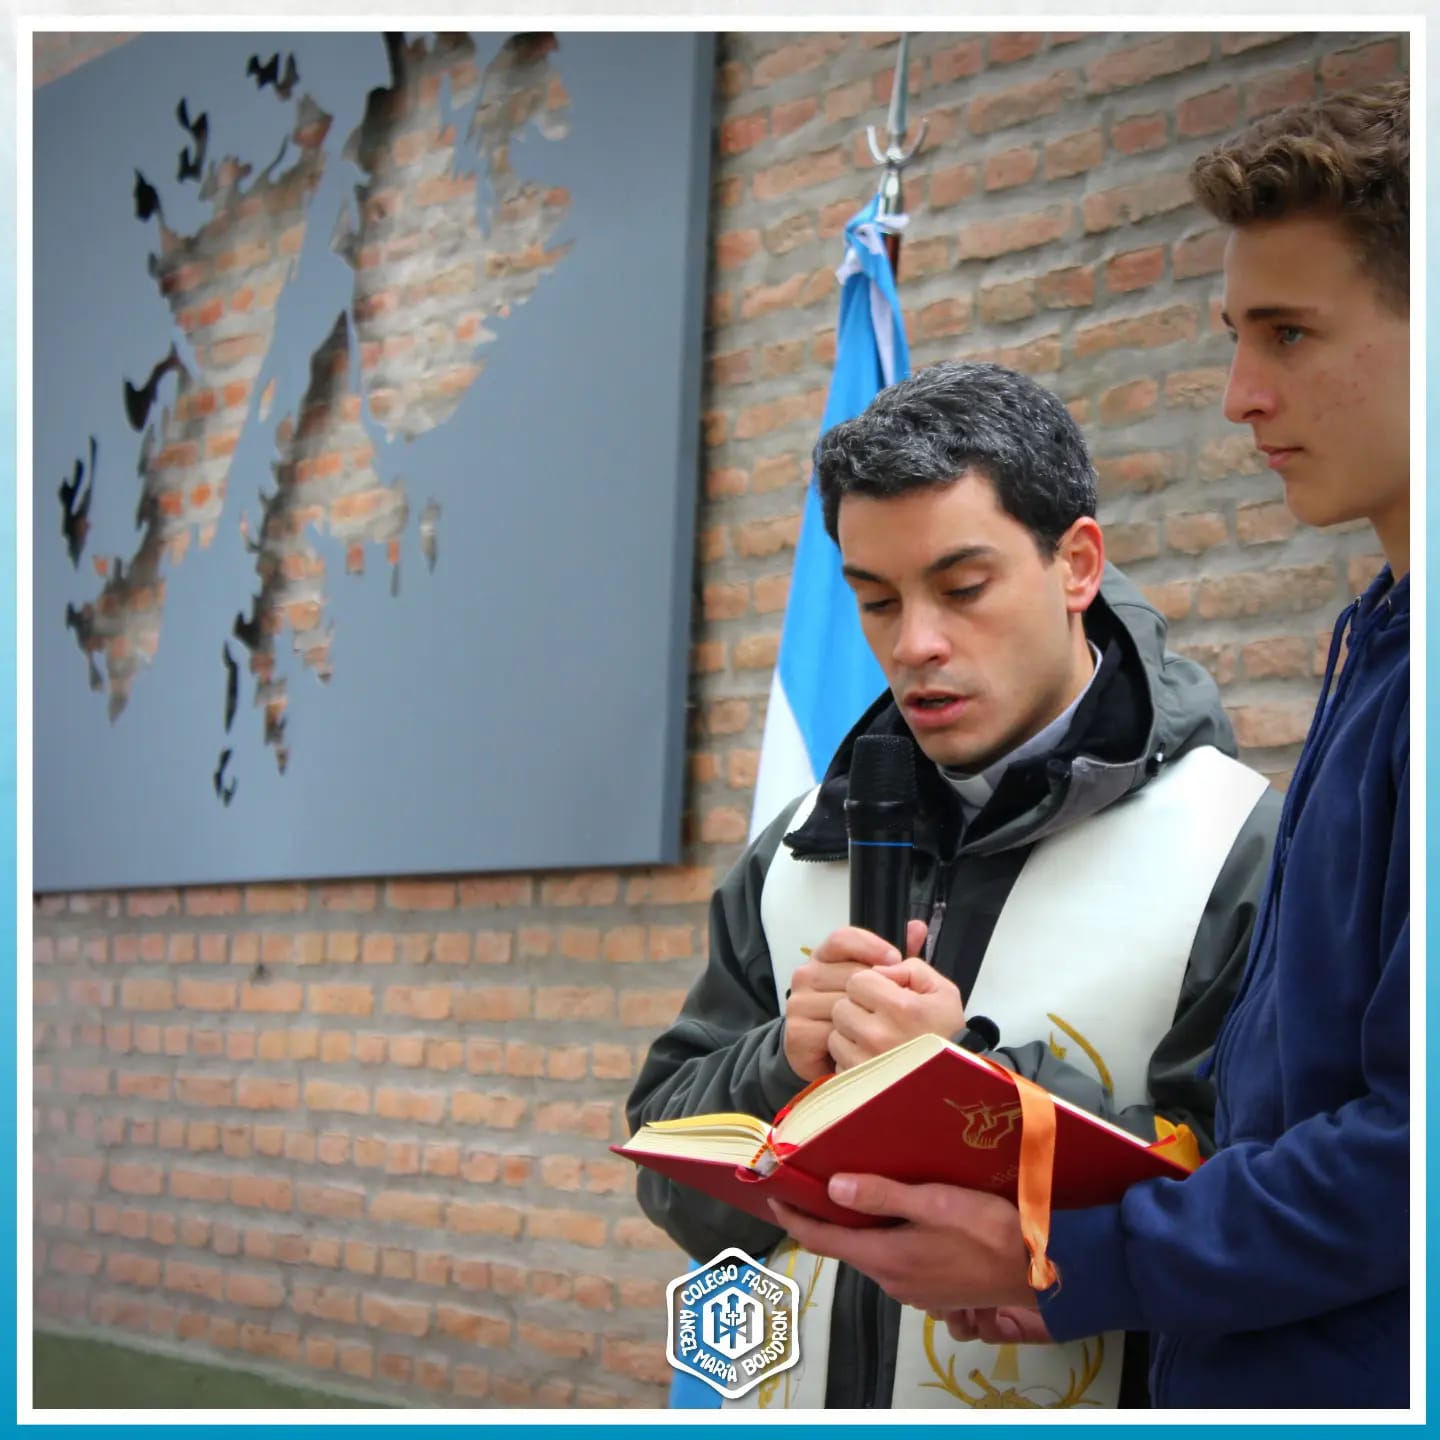 Tucumán: El Colegio inauguró monumento a los héroes de Malvinas